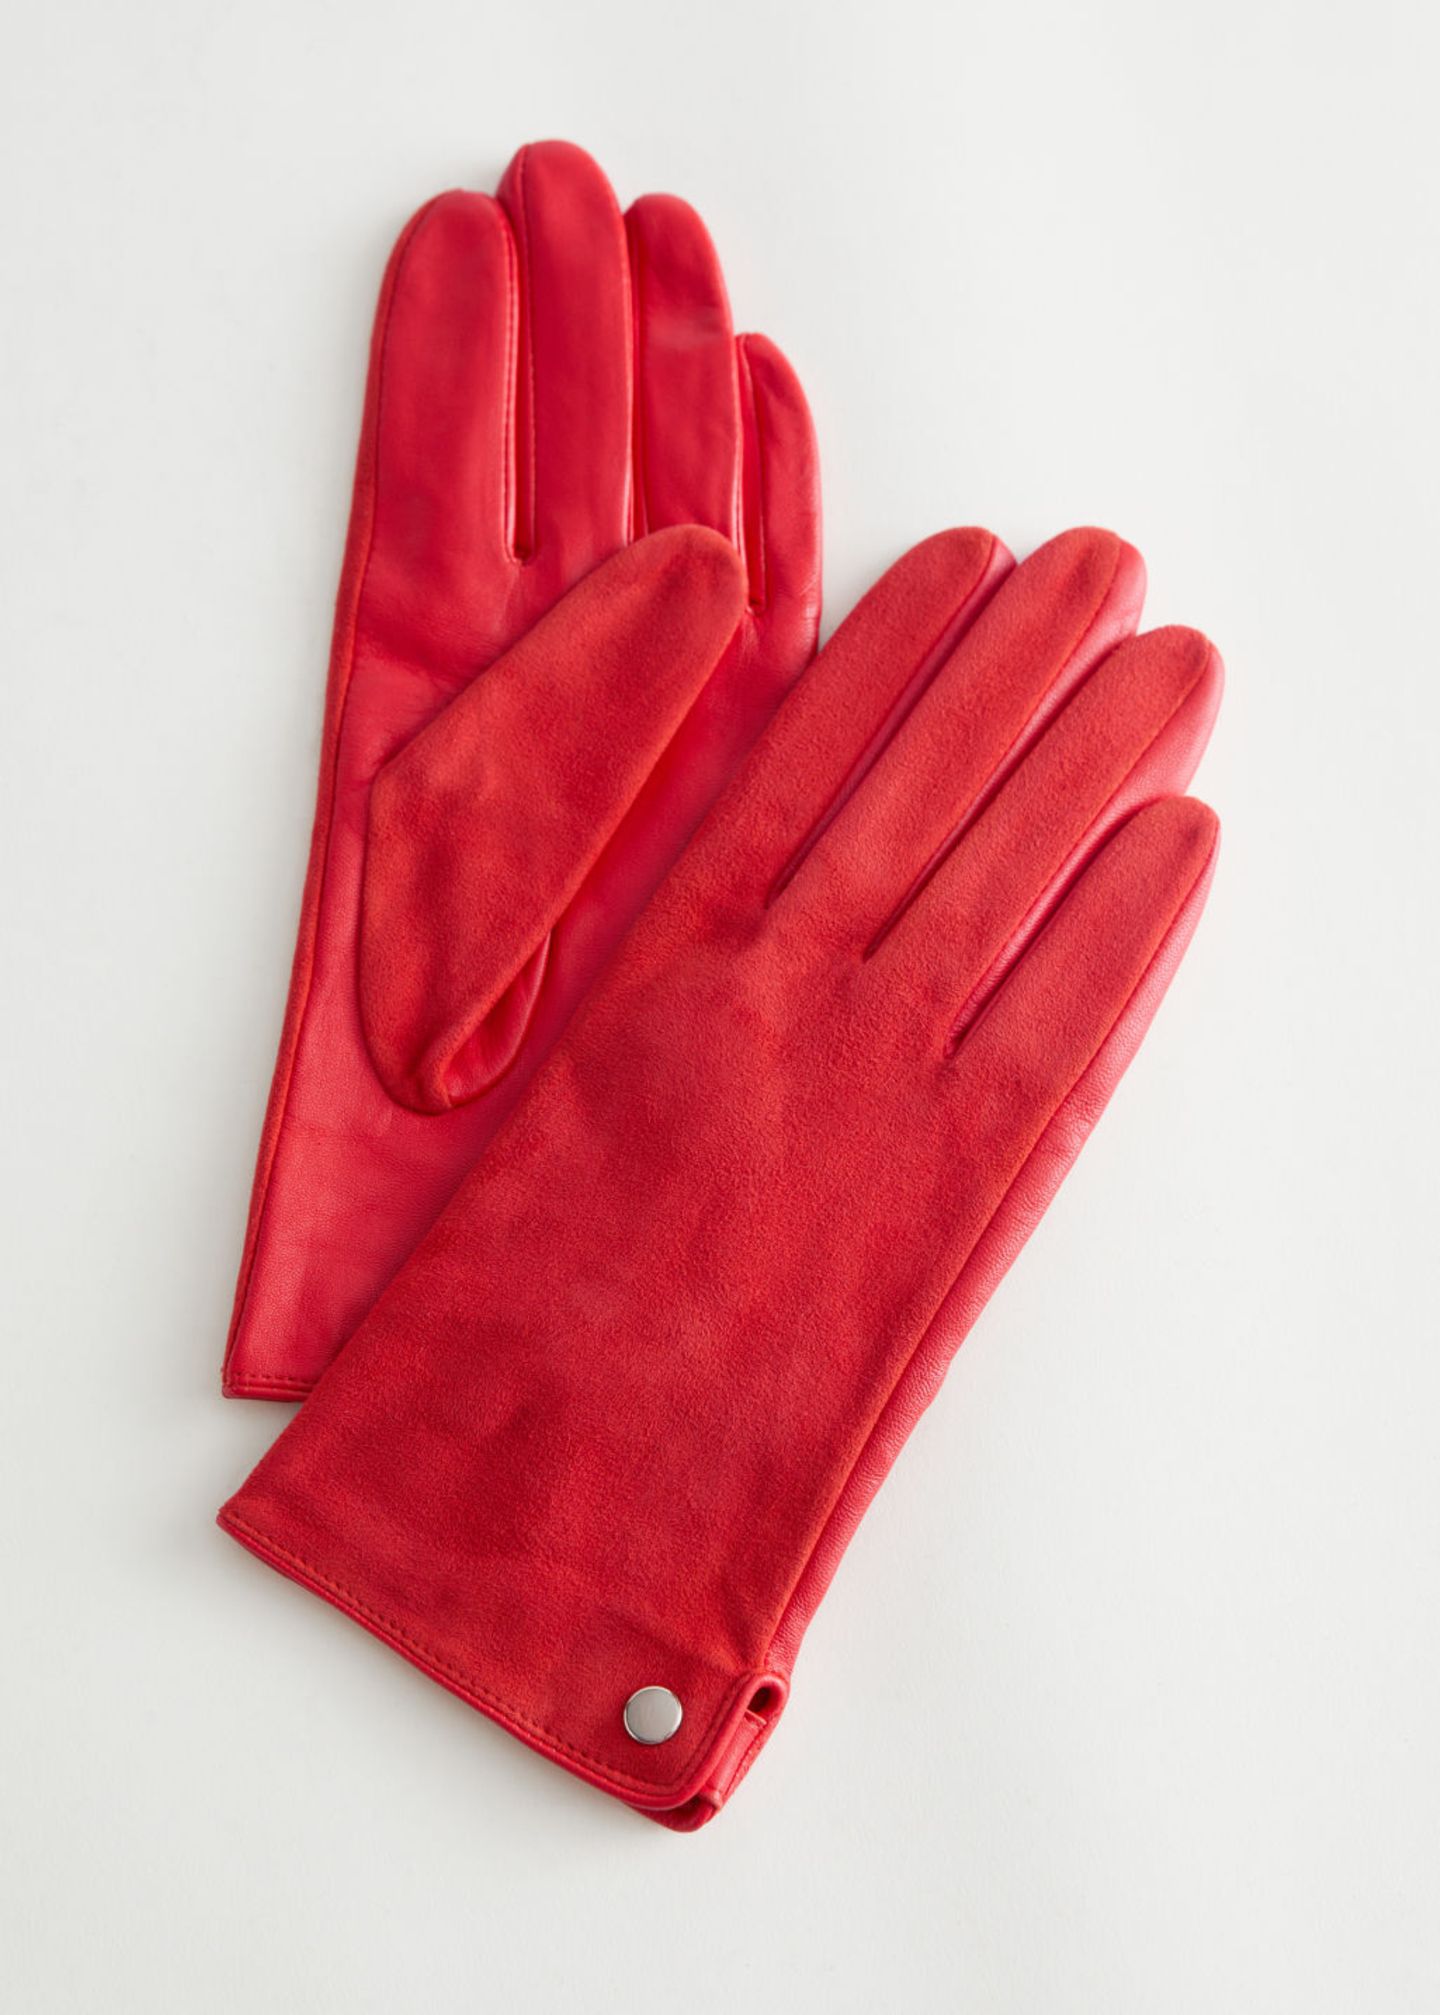 Anders als in den letzten Saisons tragen wir Lederhandschuhe in diesem Herbst nicht im klassischen Schwarz oder Braun, sondern im knalligen Rot. Um die auffällige Farbe wirken zu lassen, sollte beim restlichen Outfit auf Zurückhaltung gesetzt werden. Rote Wildlederhandschuhe von & Other Stories, für ca. 60 Euro.